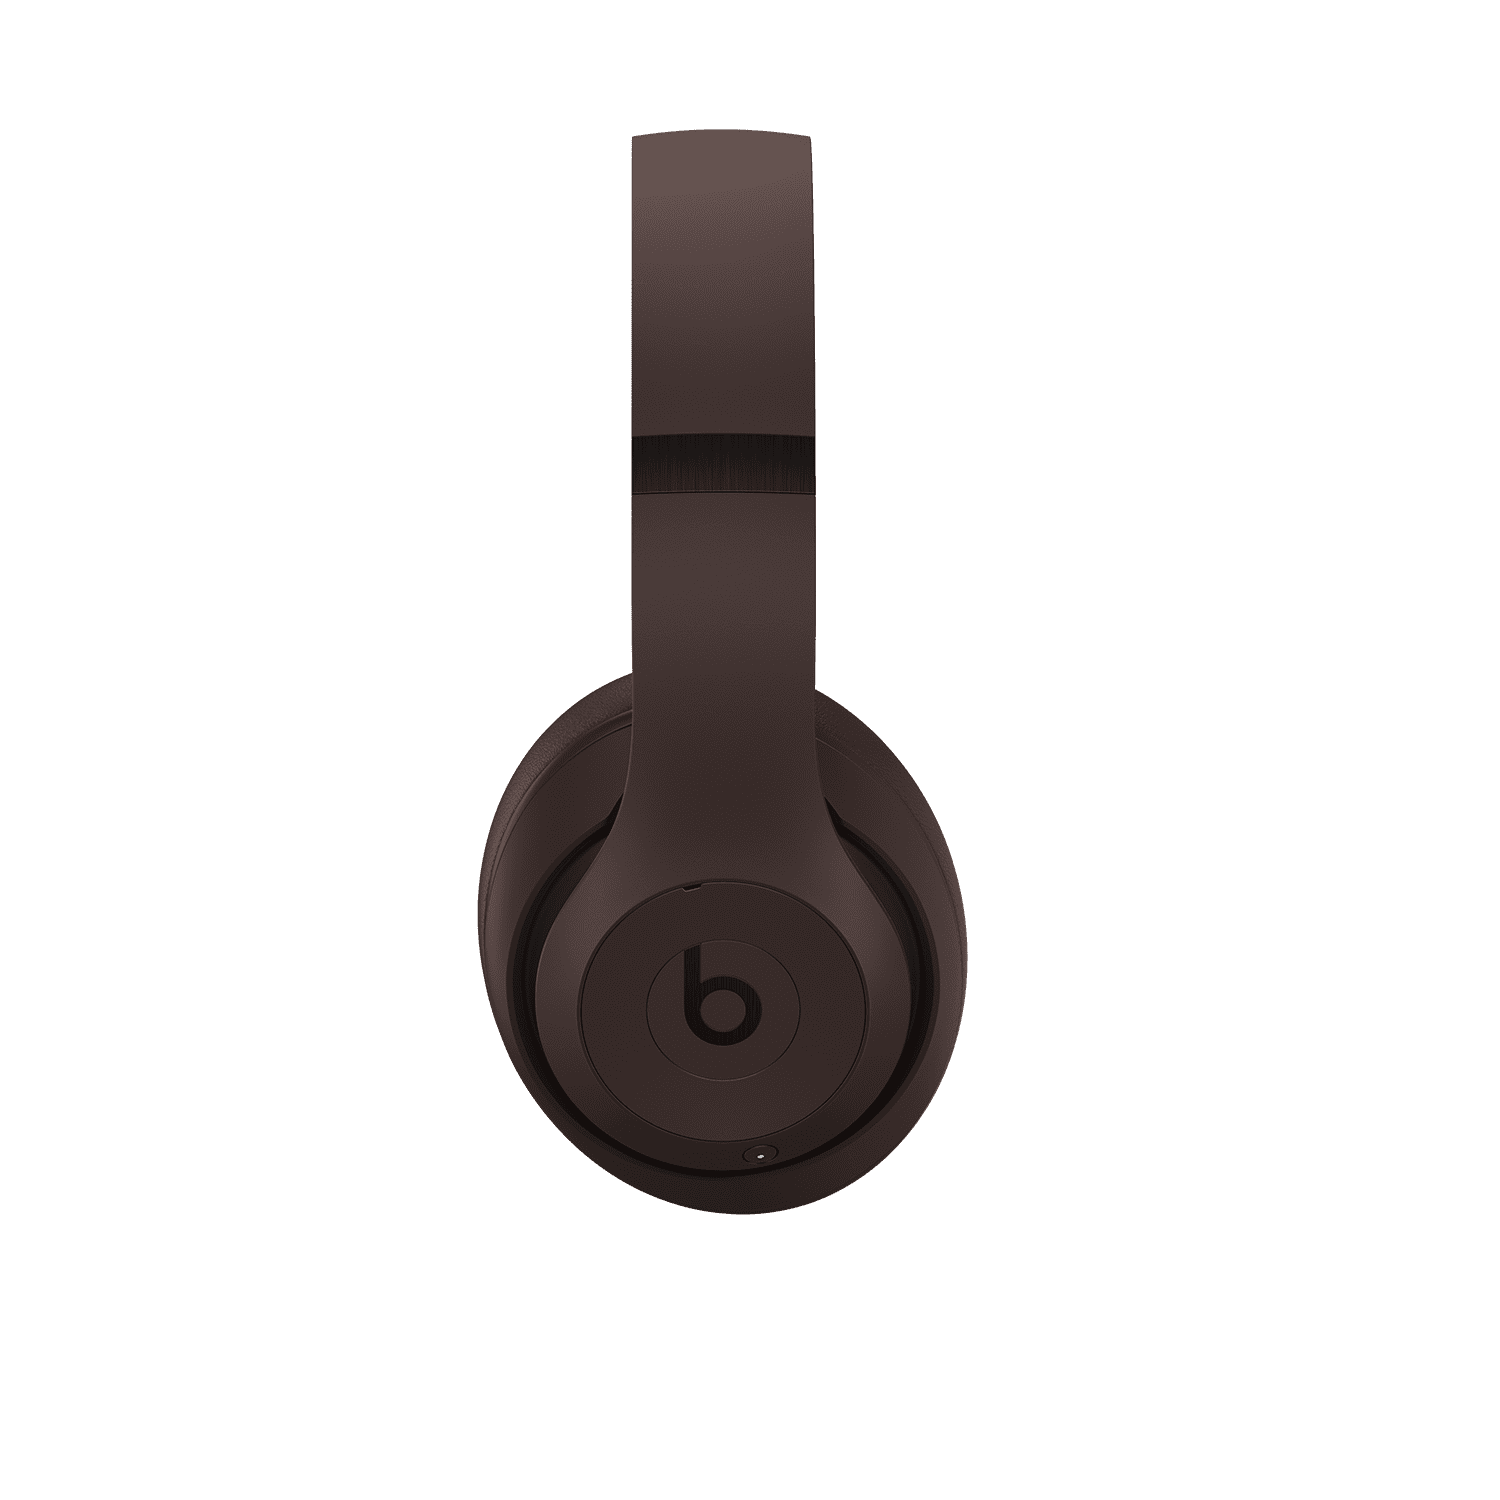 Beats Studio Pro Wireless Headphones — Navy